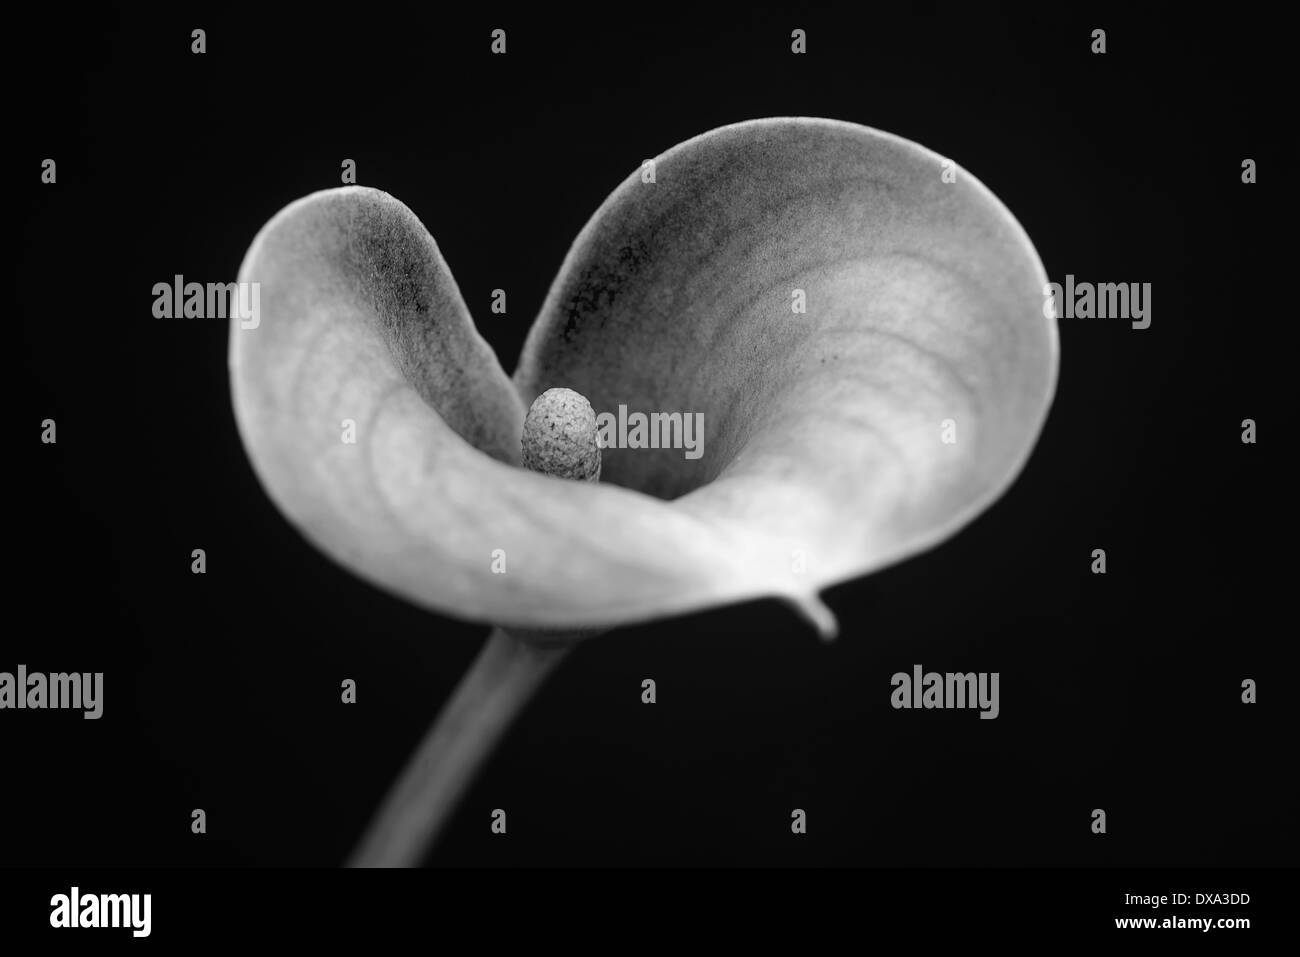 Arum lily, Calla Lily, Zantedeschia, angolo di vista la creazione di una forma di cuore con il fuoco selettivo per il centro. Foto Stock